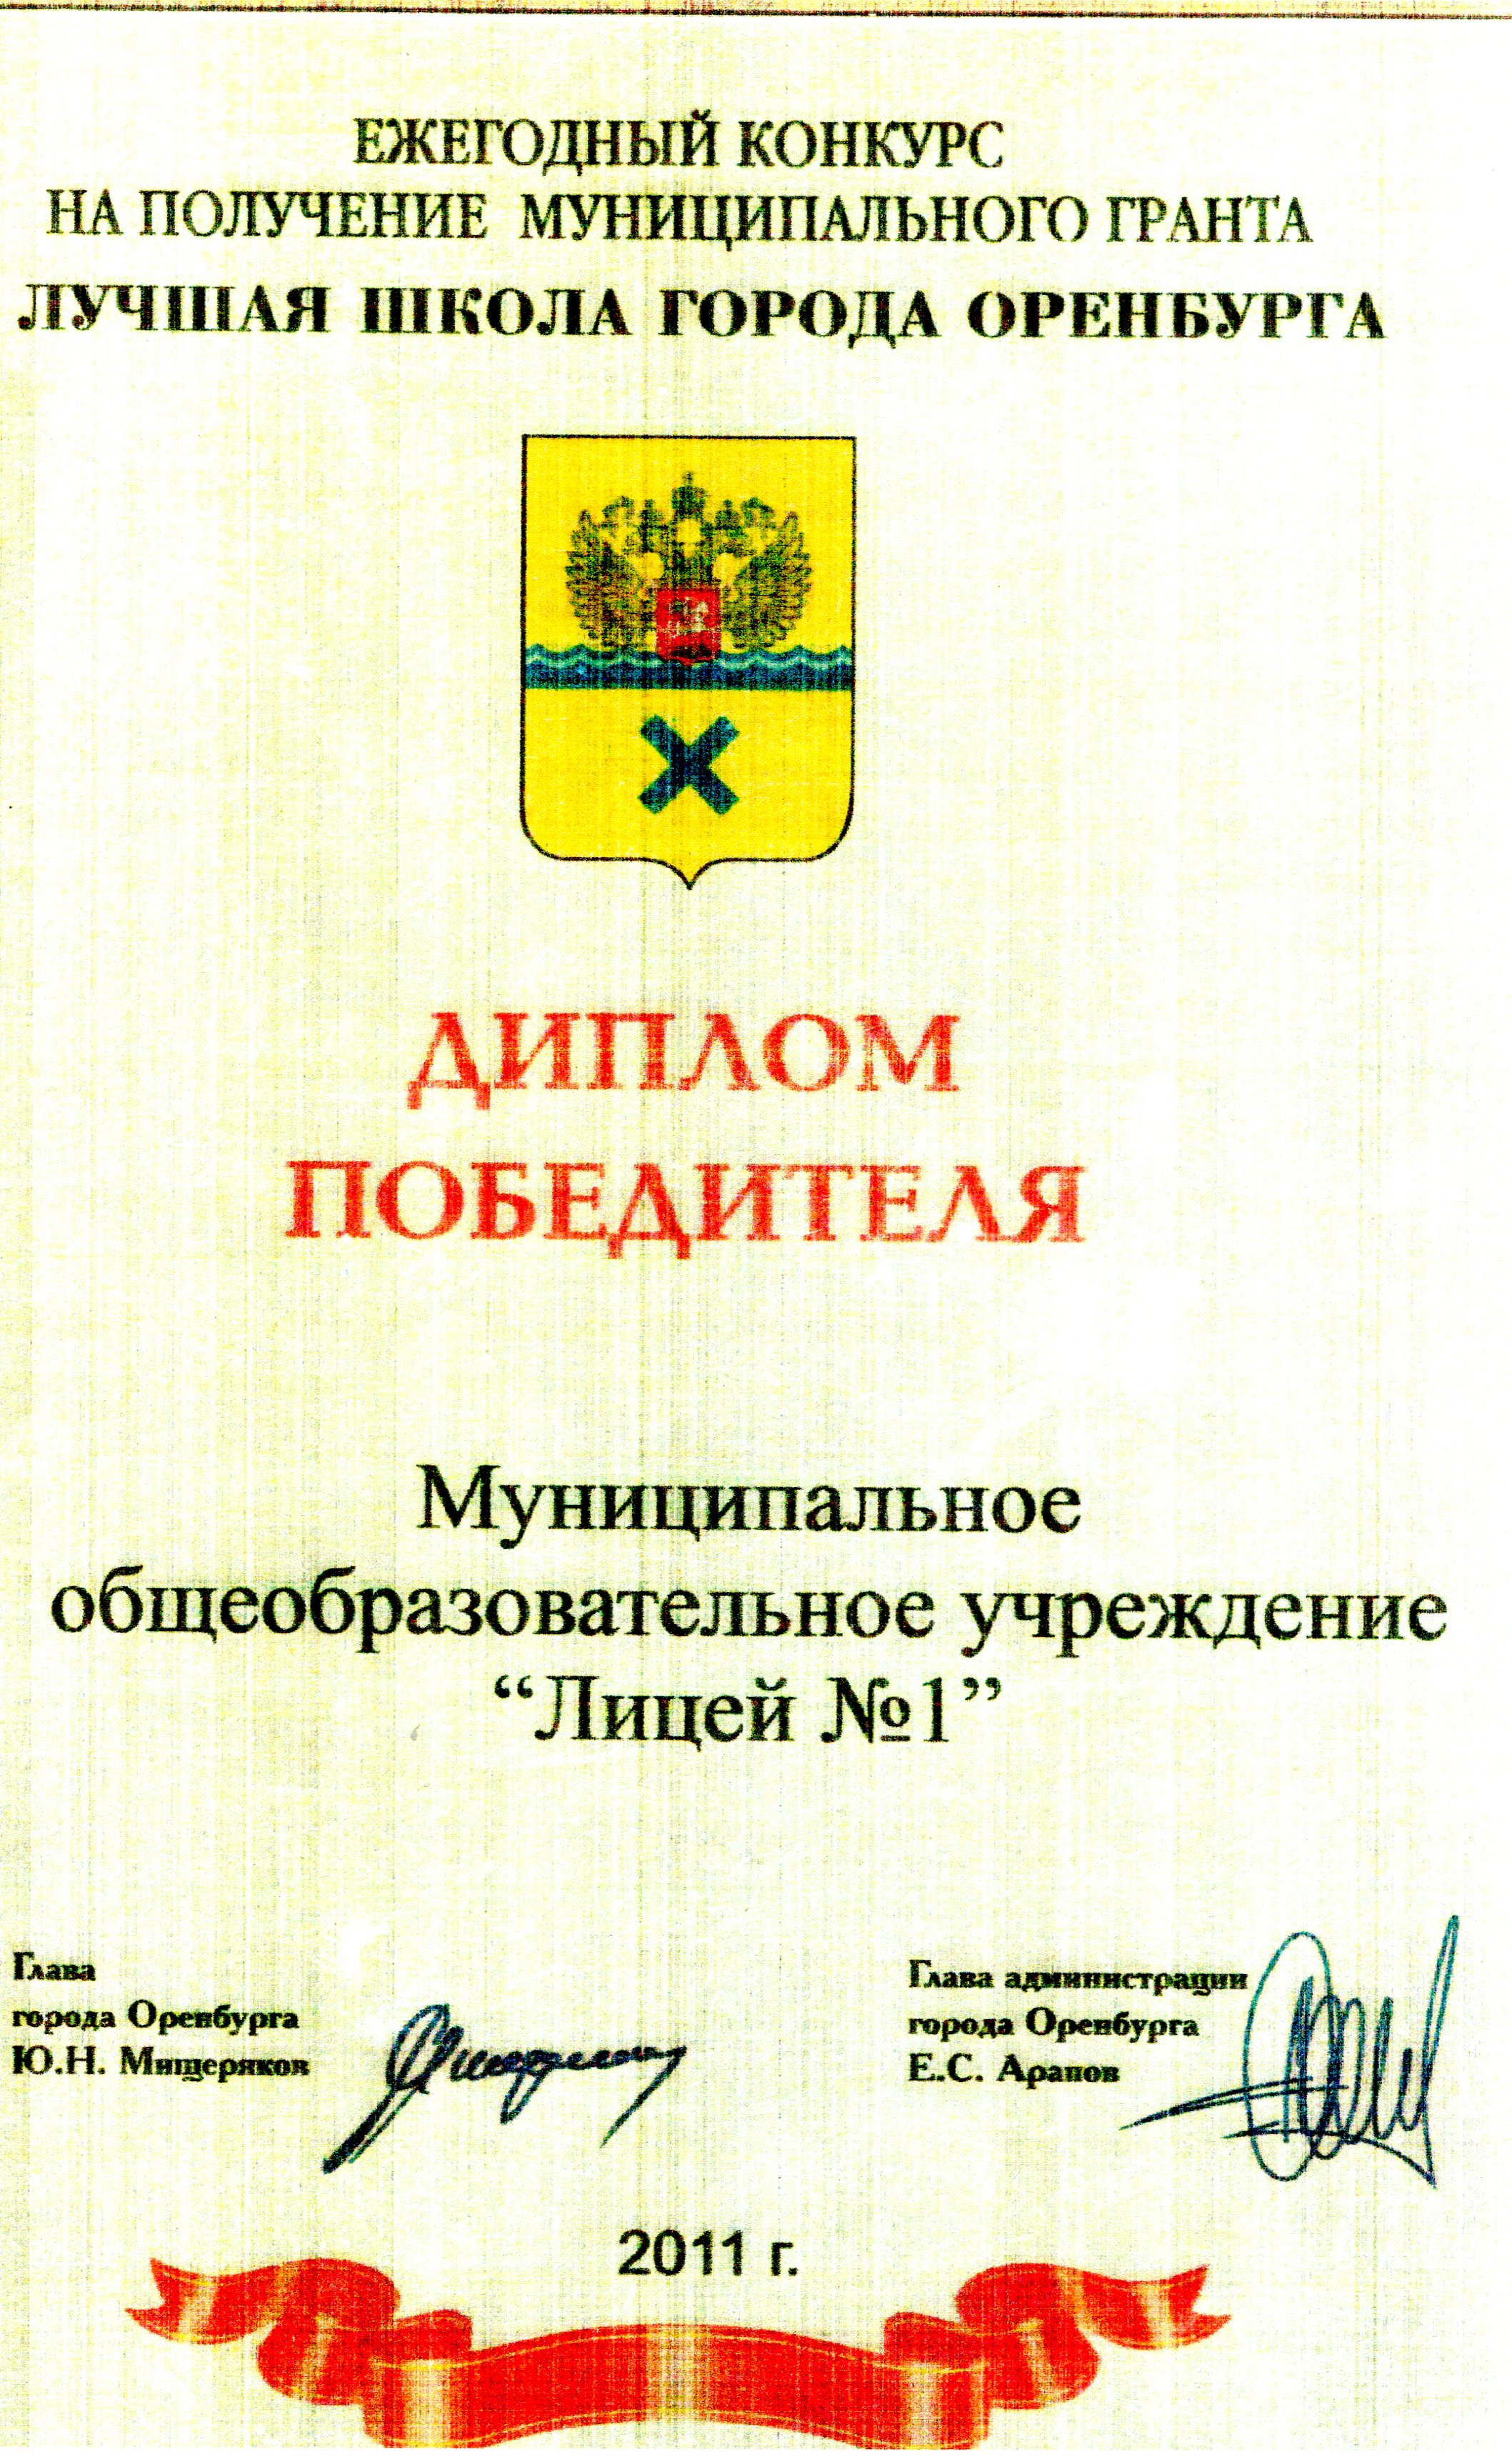 Диплом победителя ежегодного конкурса на право получение Гранта "Лучшая школа города Оренбурга", 2011г.